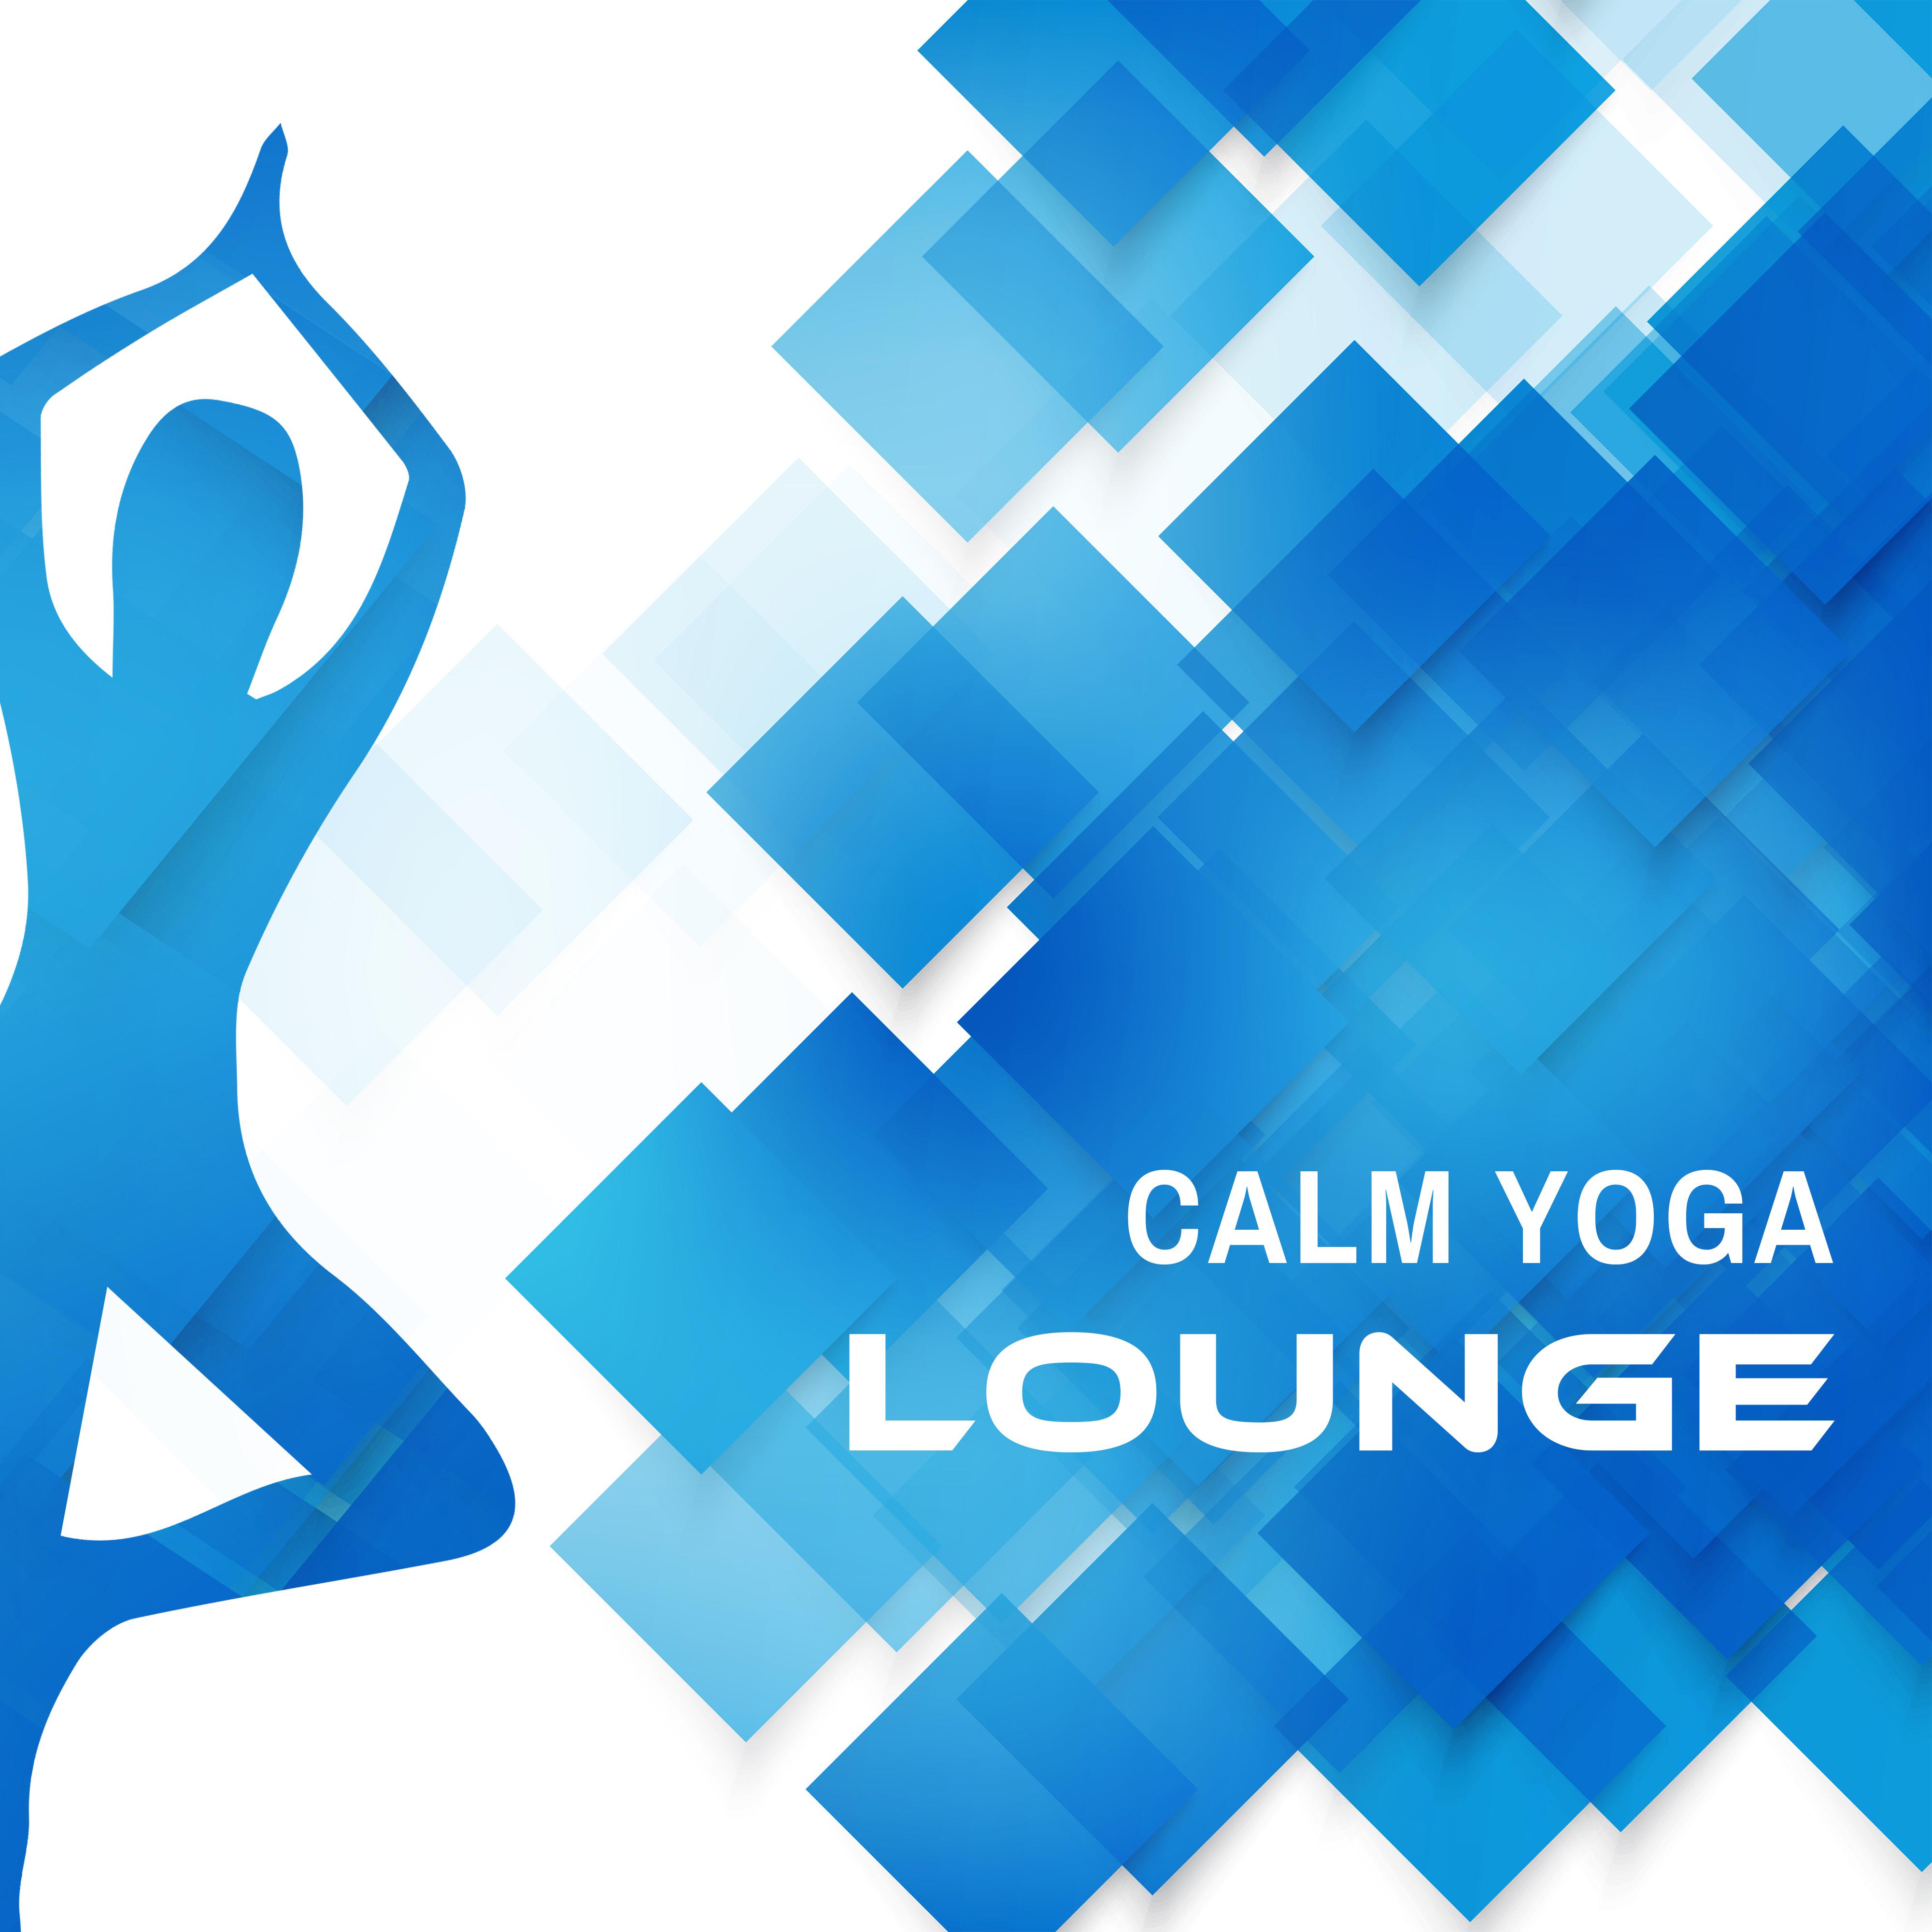 Calm Yoga Lounge